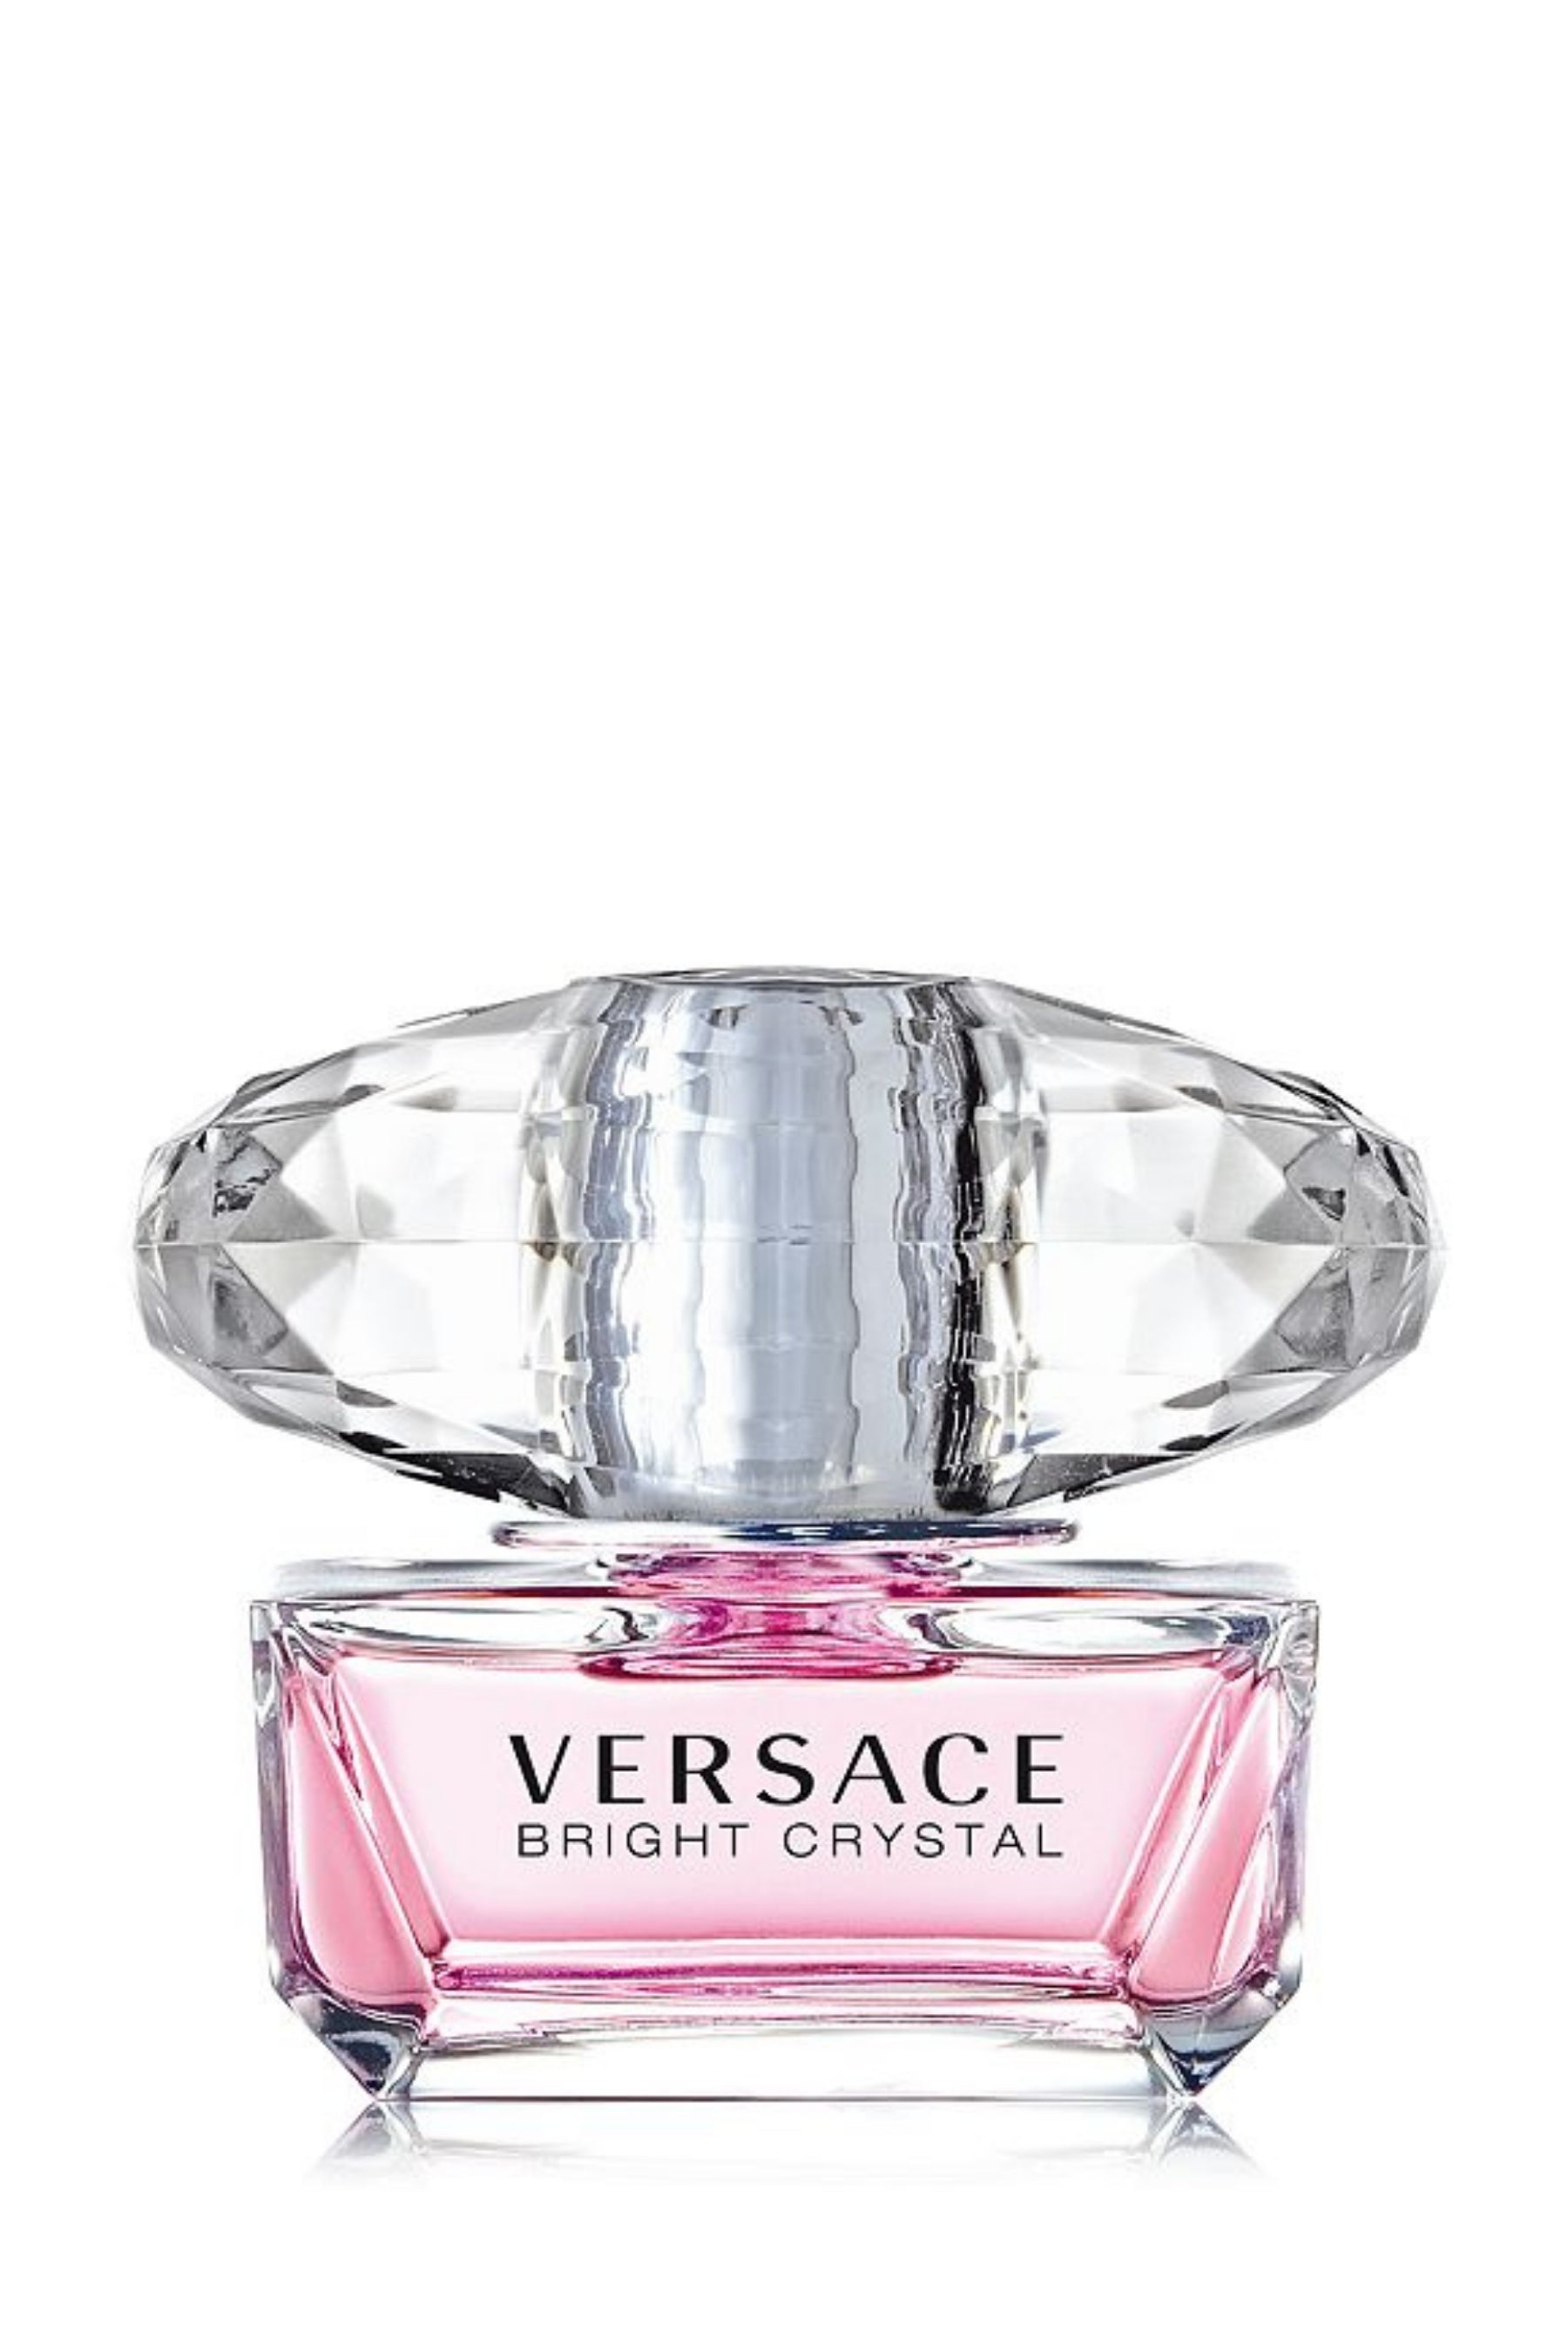 Versace | Bright Crystal Eau de Toilette 3 Piece Gift Set